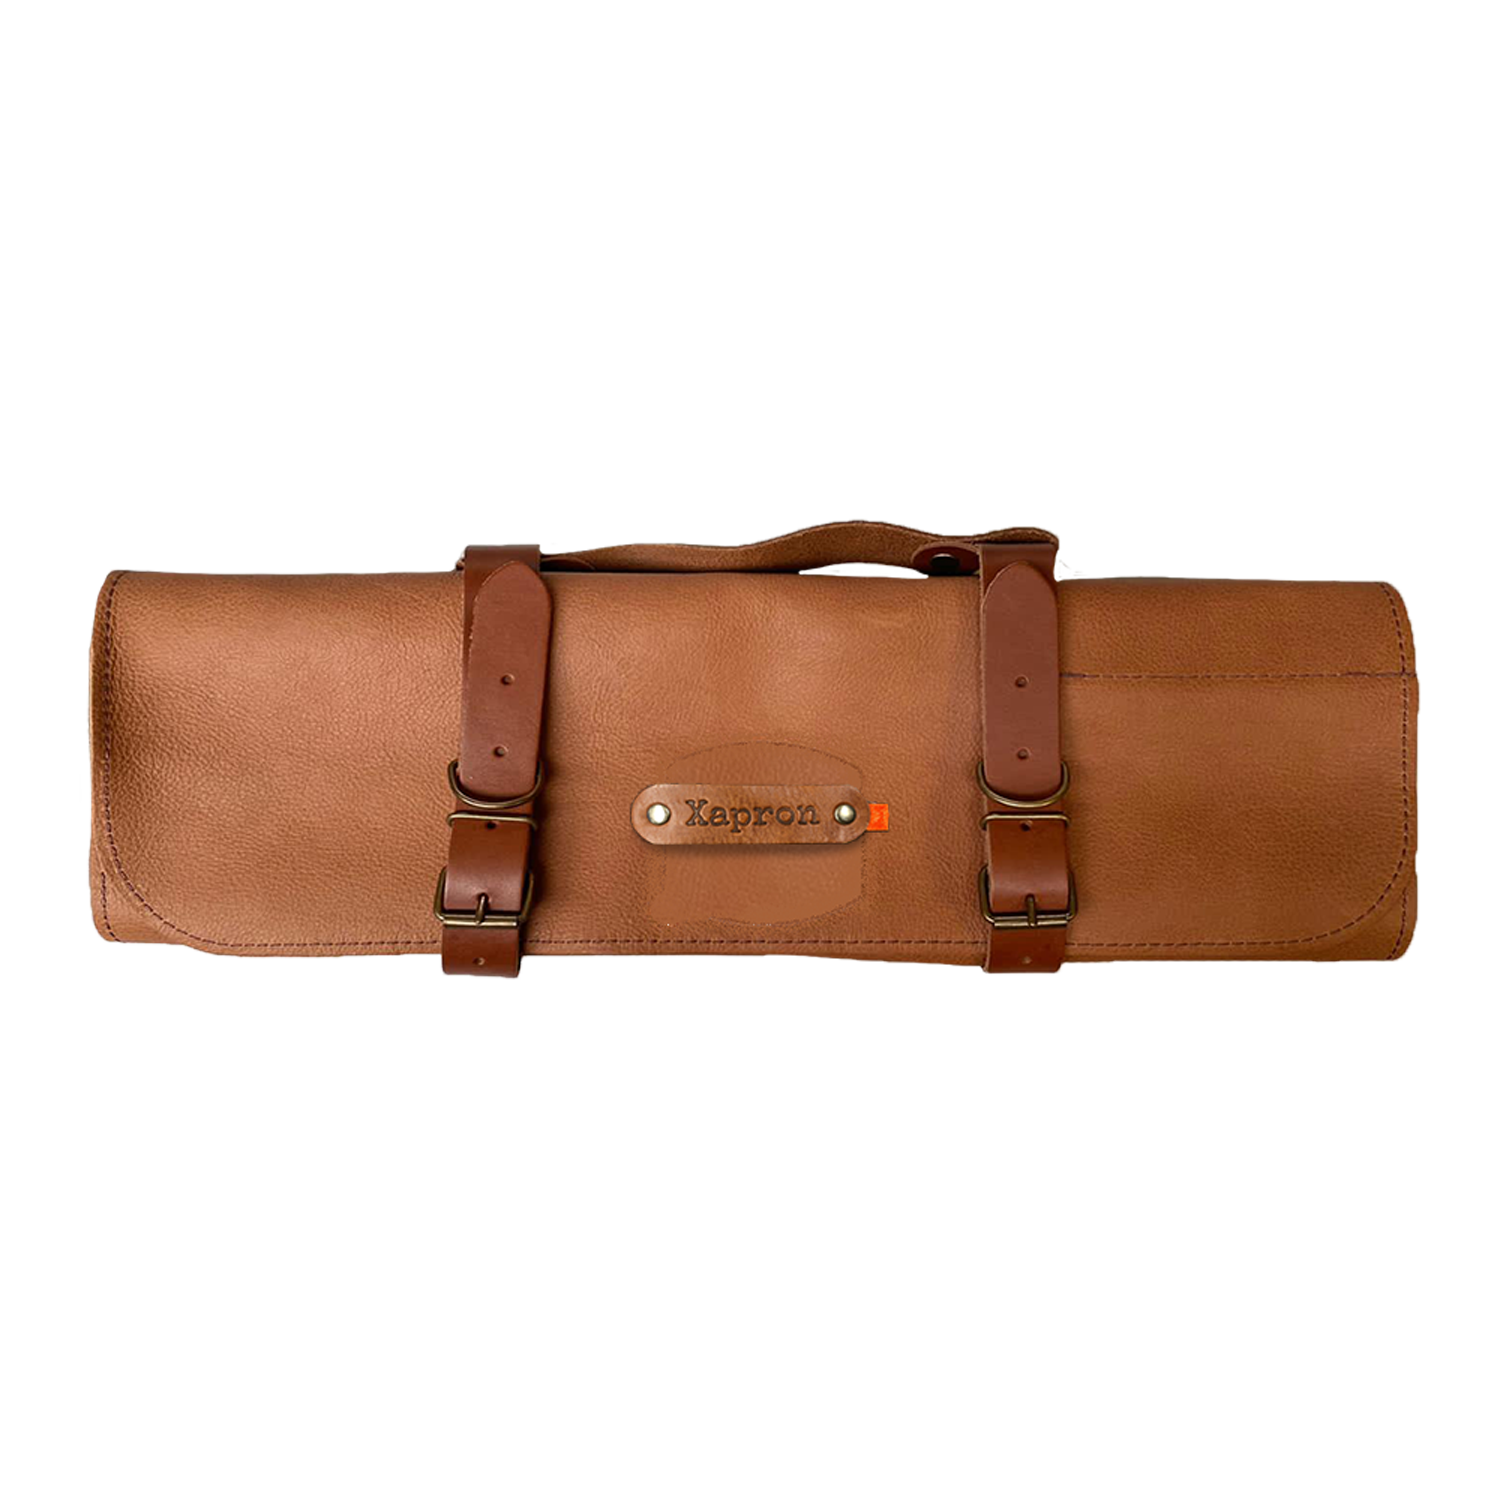 Xapron Leder Messerrollentasche Utah rust vollnarbiges Büffelleder 9 Taschen verstellbare Träger